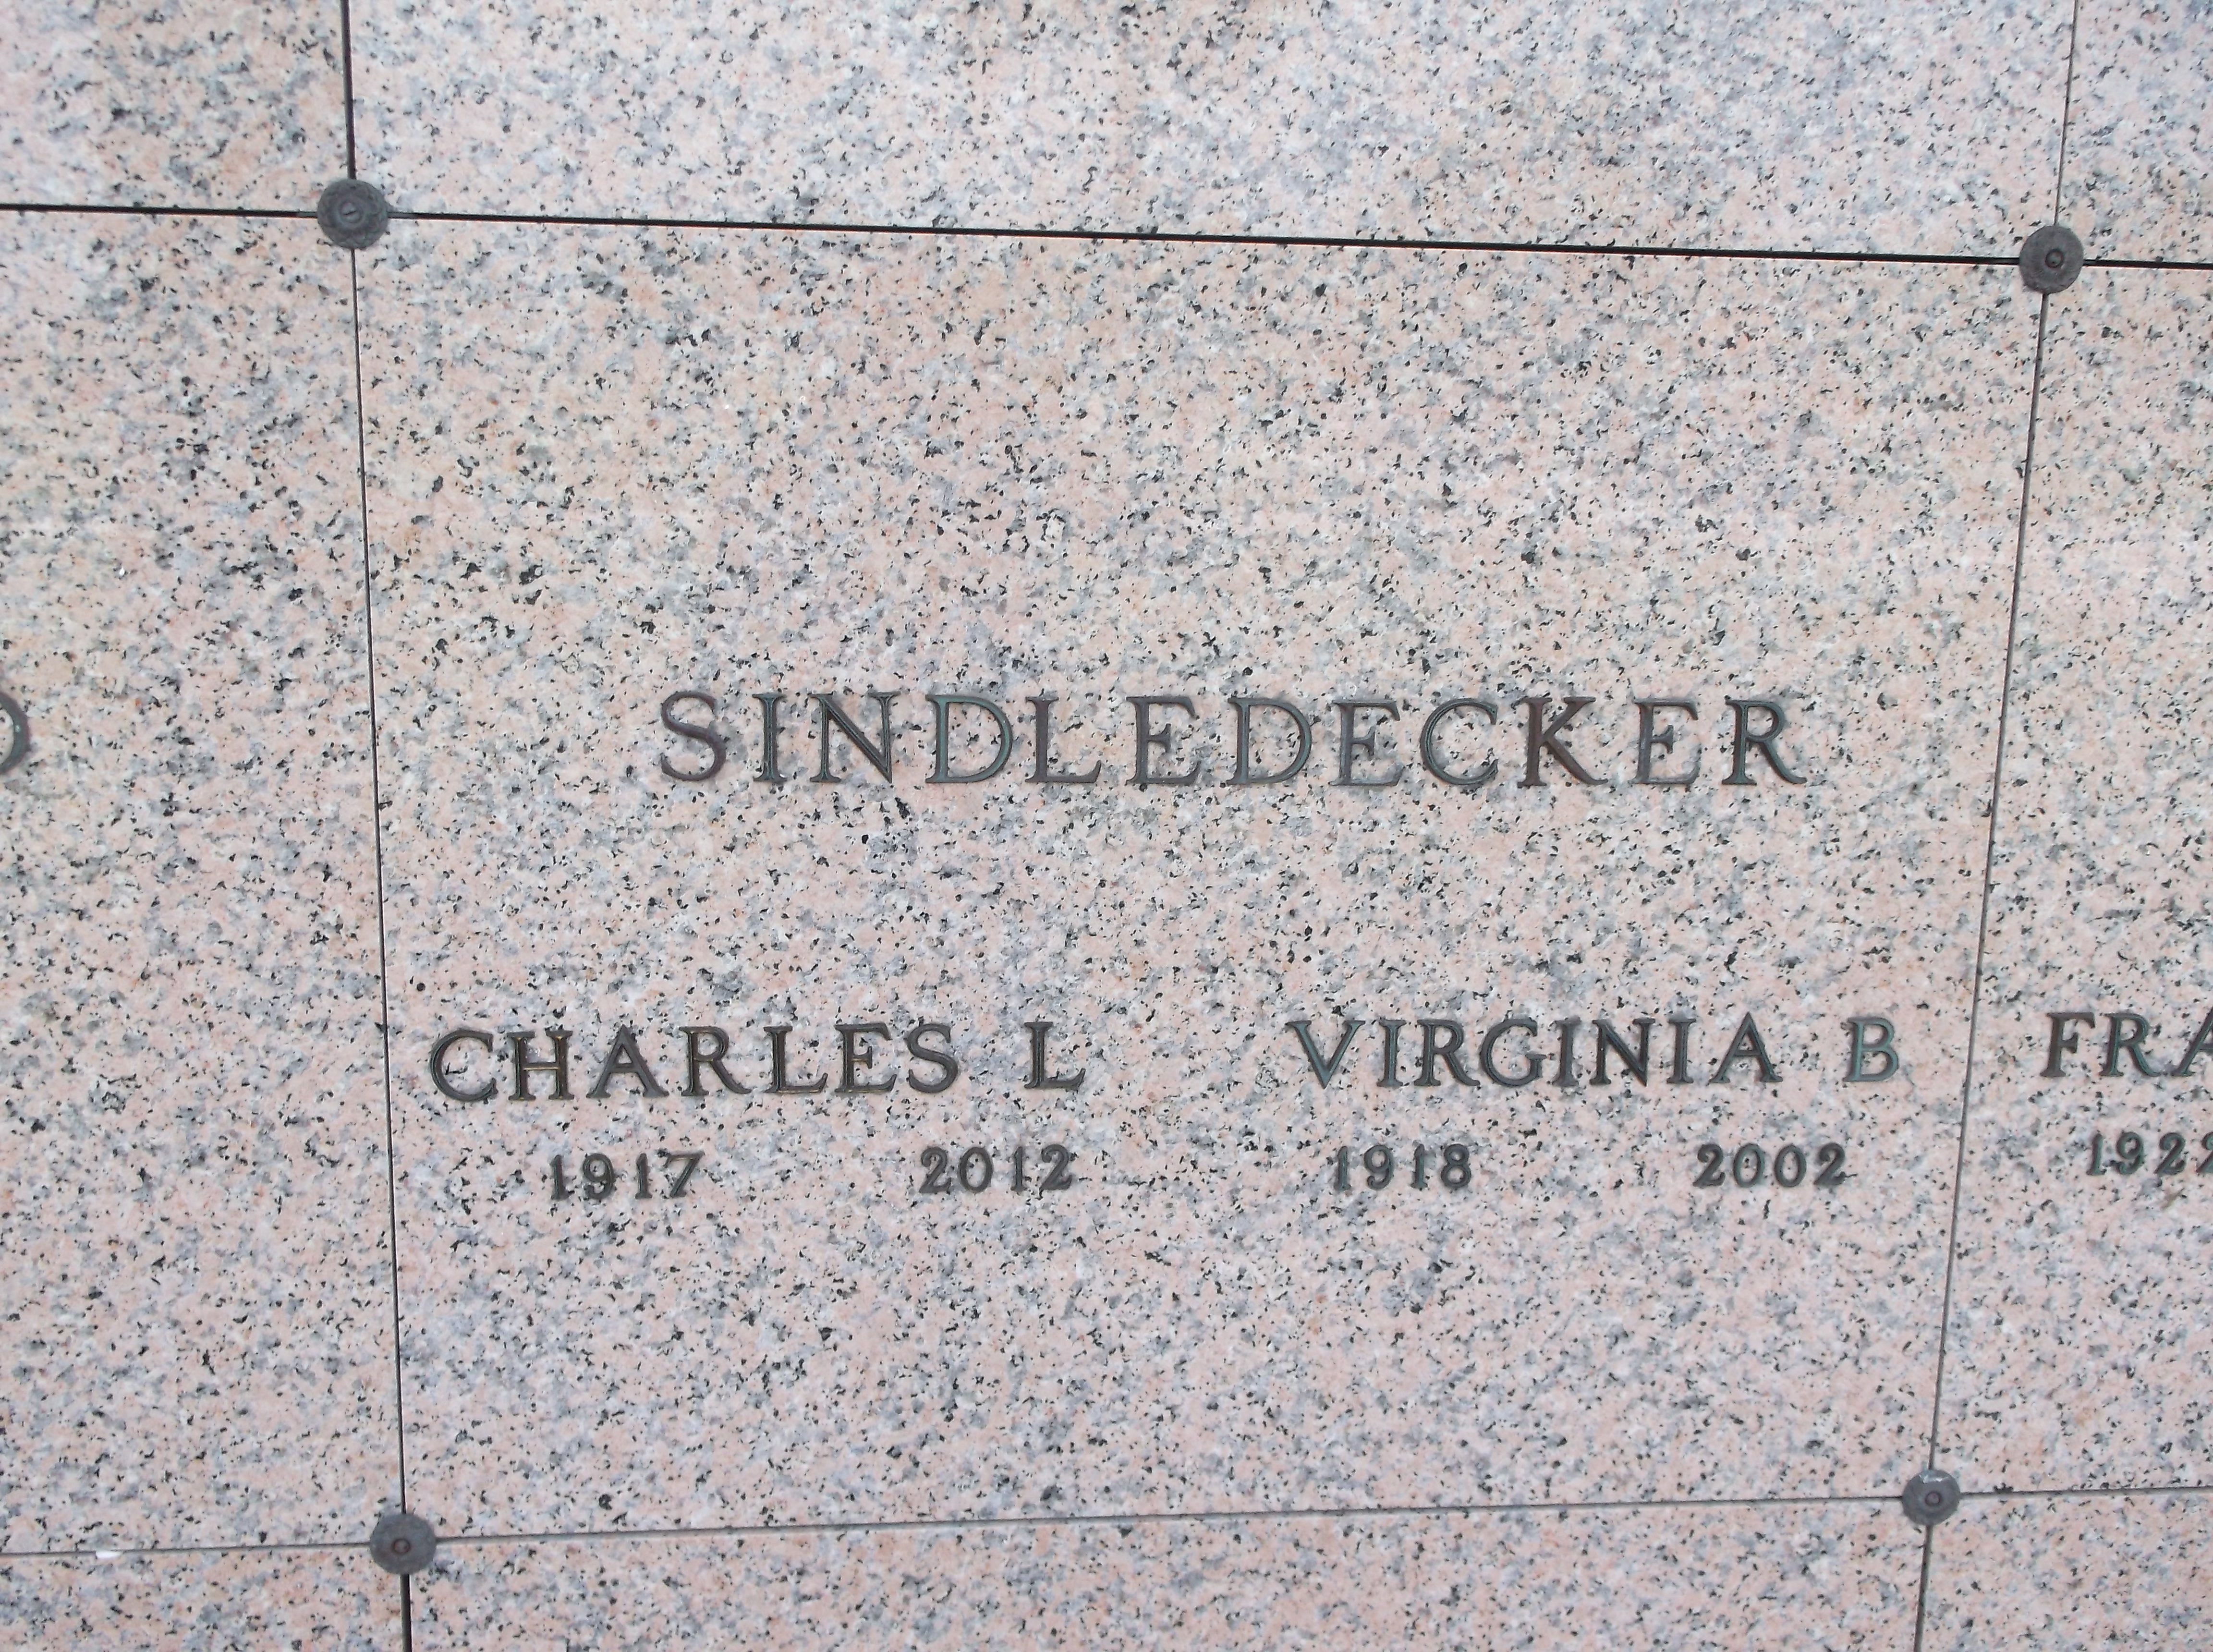 Charles L Sindledecker